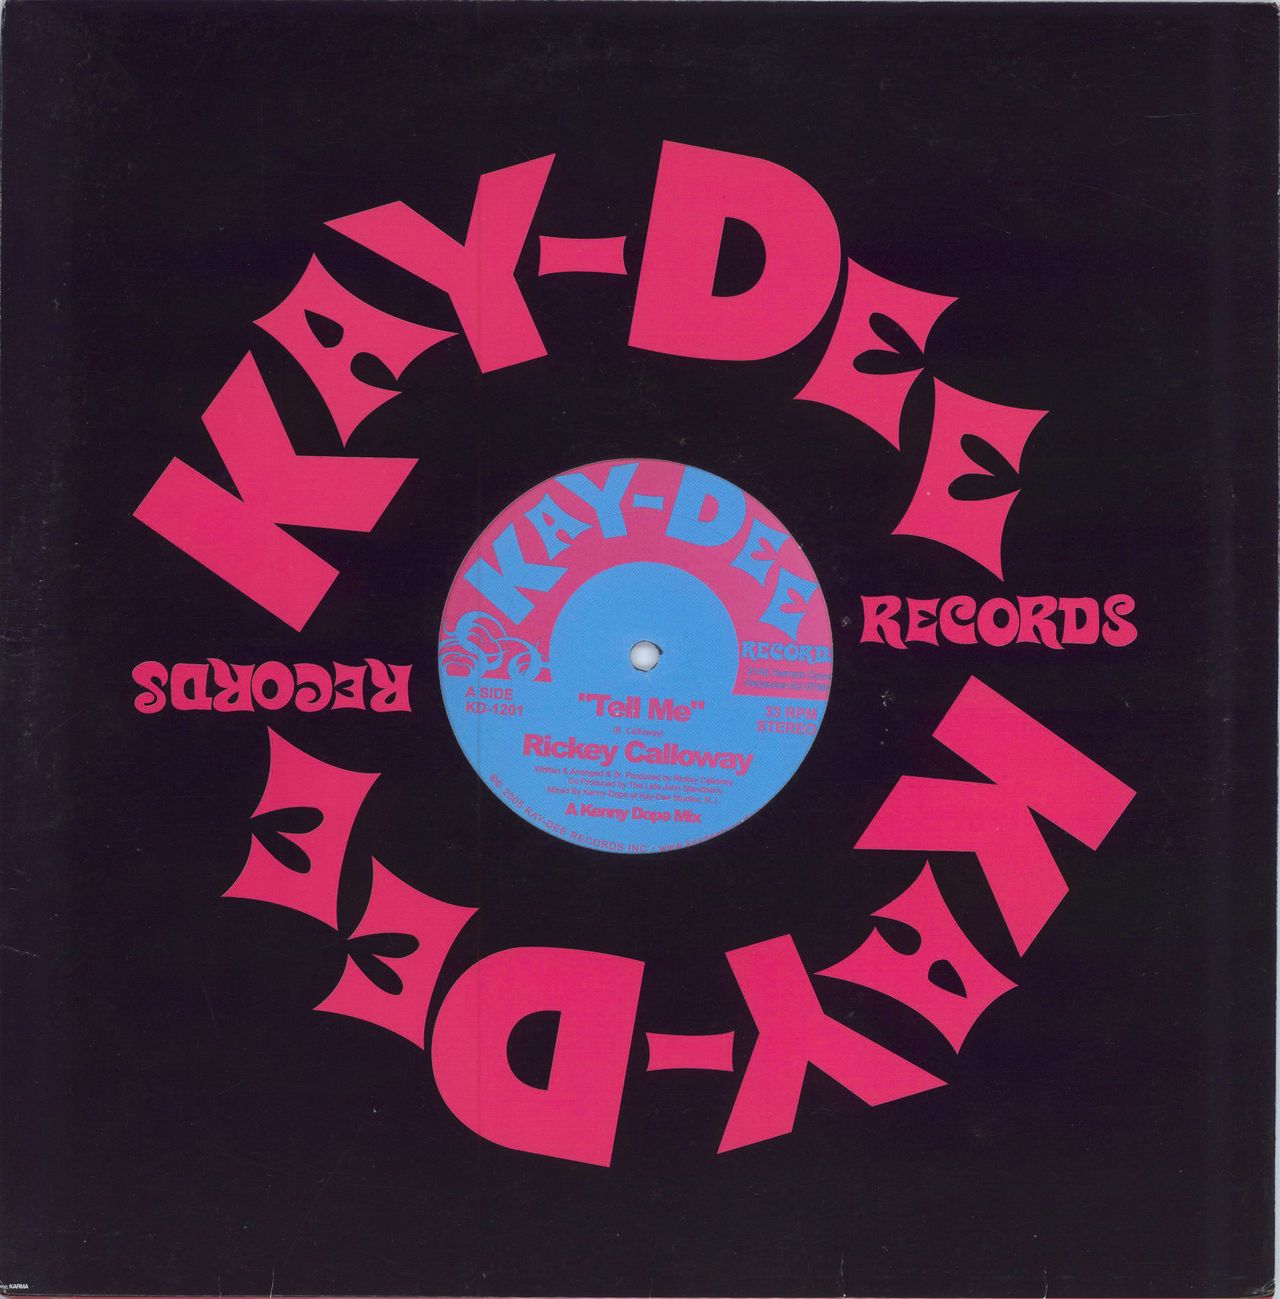 Rickey Calloway Tell Me US 12" vinyl single (12 inch record / Maxi-single) KD-1201